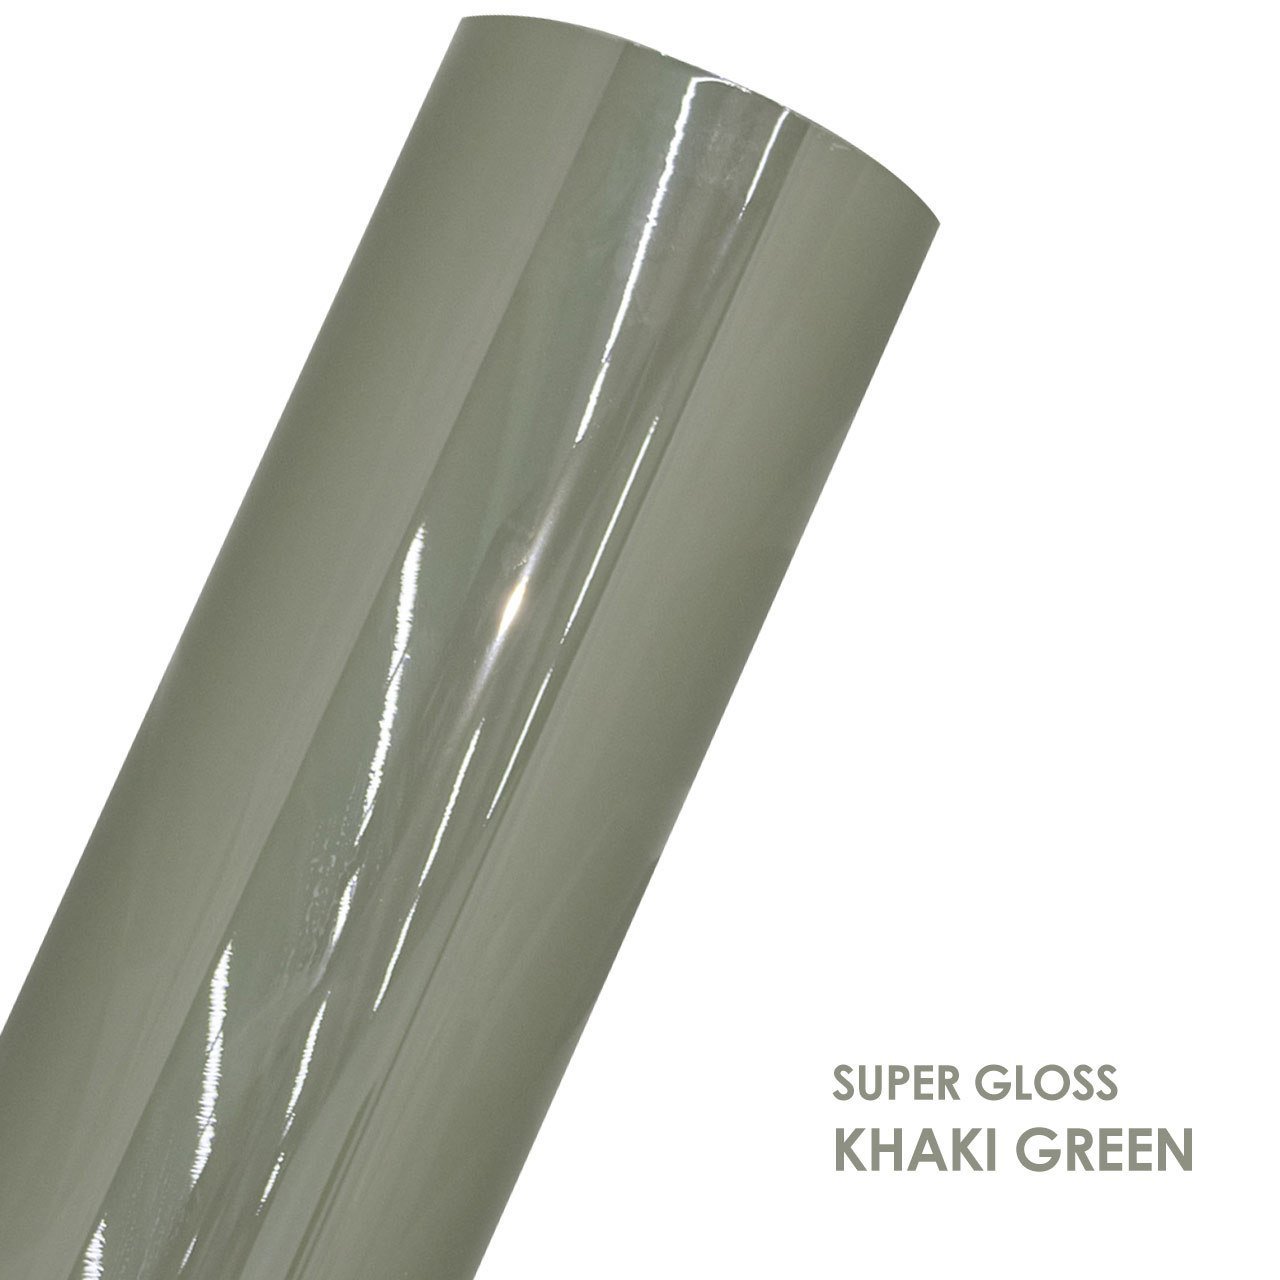 SUPER GLOSS KHAKI GREEN